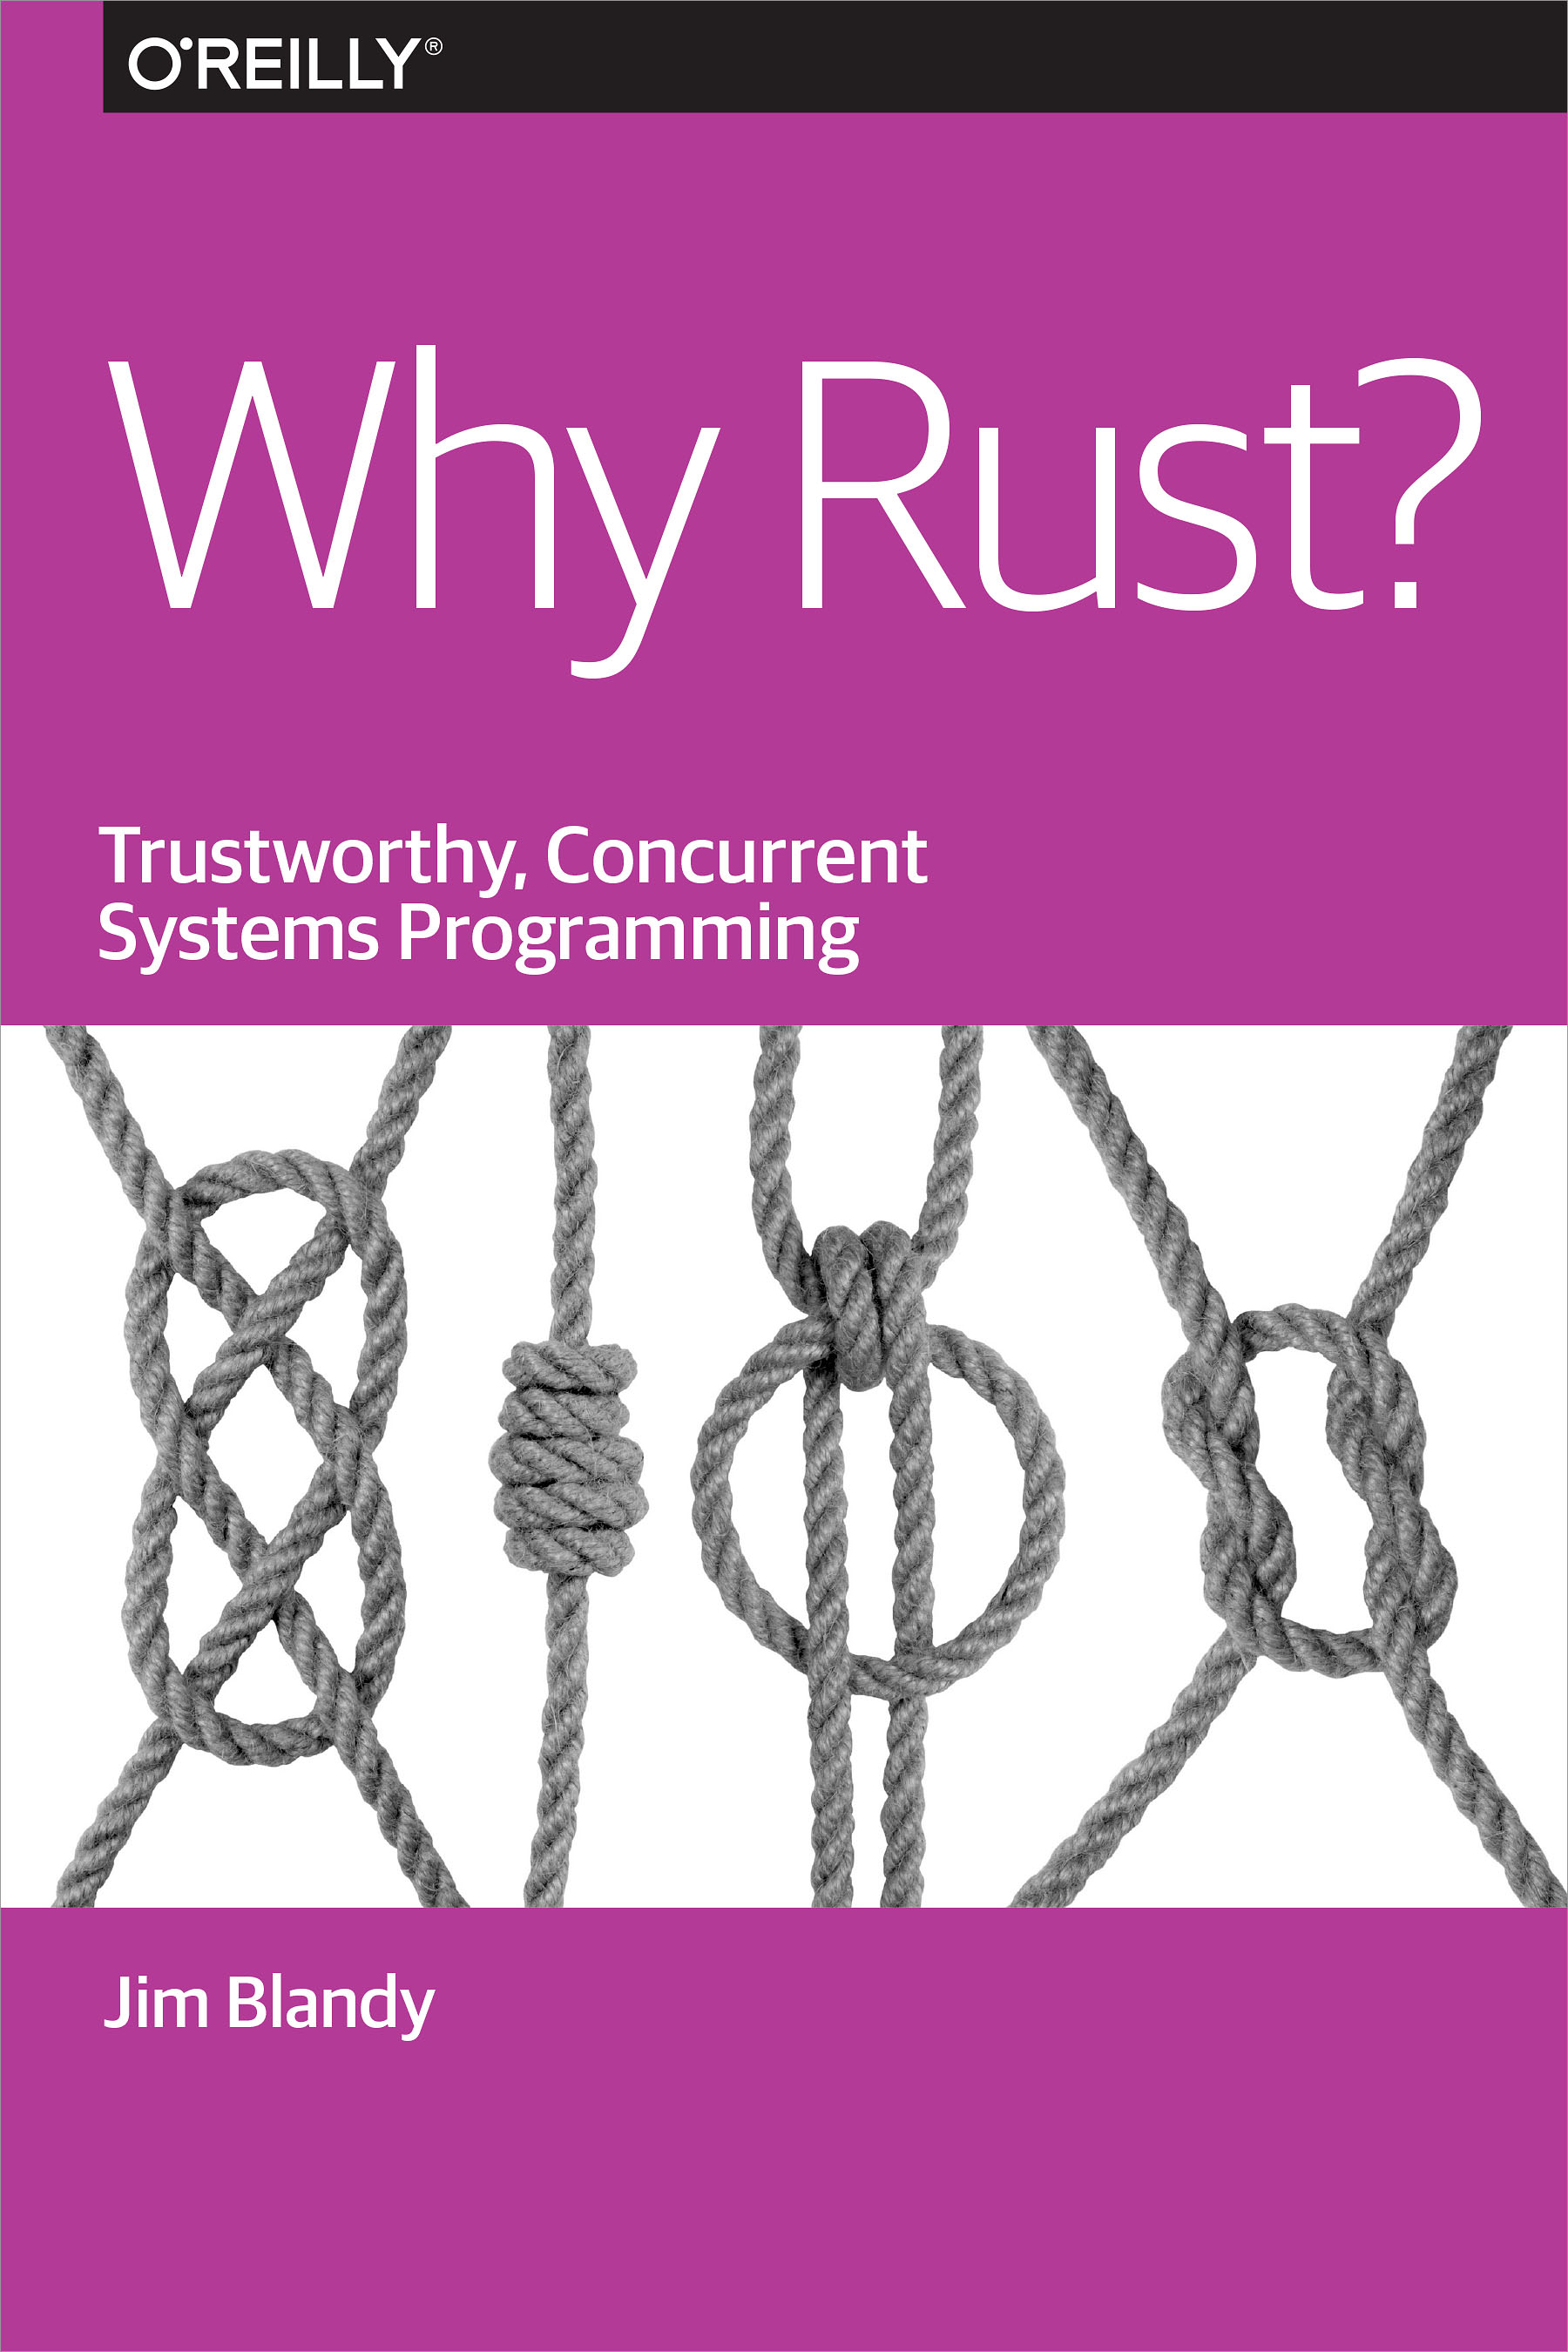 Jim Blandy: Why Rust? (EBook, 2015, O'Reilly Media)